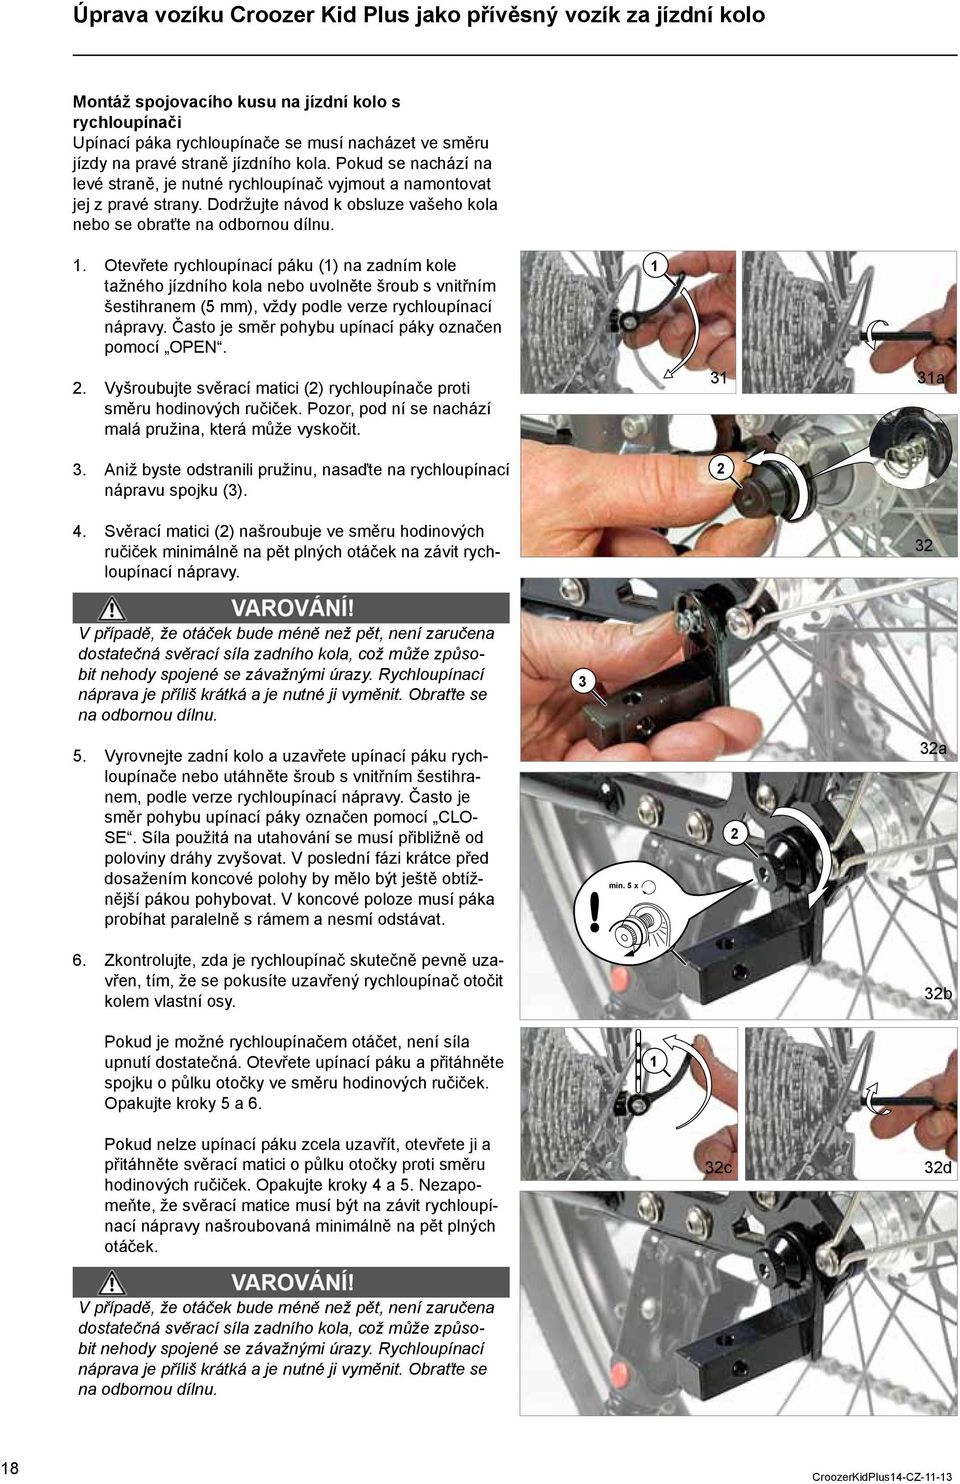 . Otevřete rychloupínací páku () na zadním kole tažného jízdního kola nebo uvolněte šroub s vnitřním šestihranem (5 mm), vždy podle verze rychloupínací nápravy.